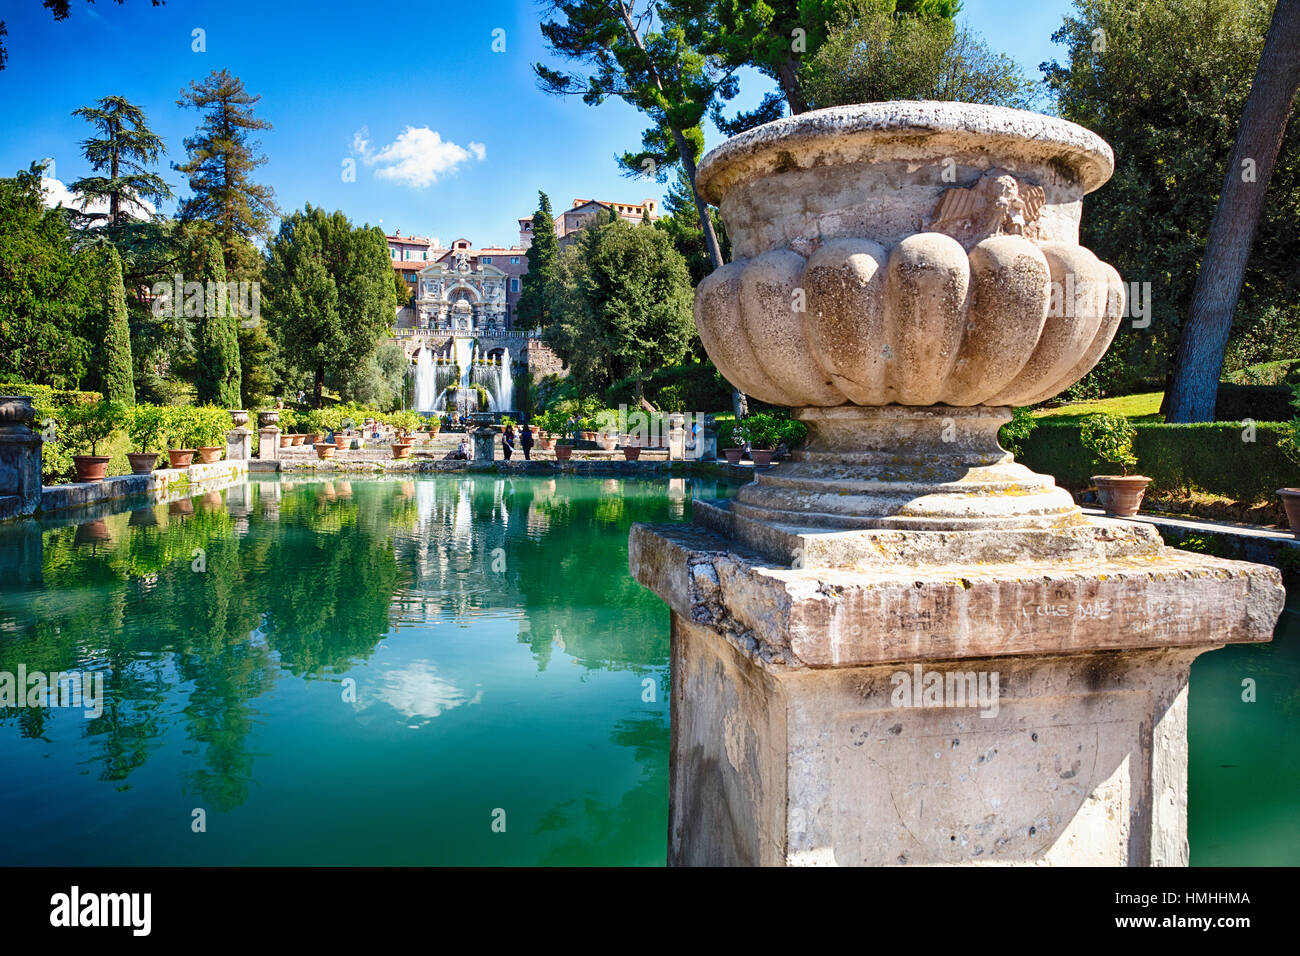 Jardin de style Renaissance avec des étangs et une fontaine d'eau, Villa D'Este, Tivoli, lazio, Italie Banque D'Images